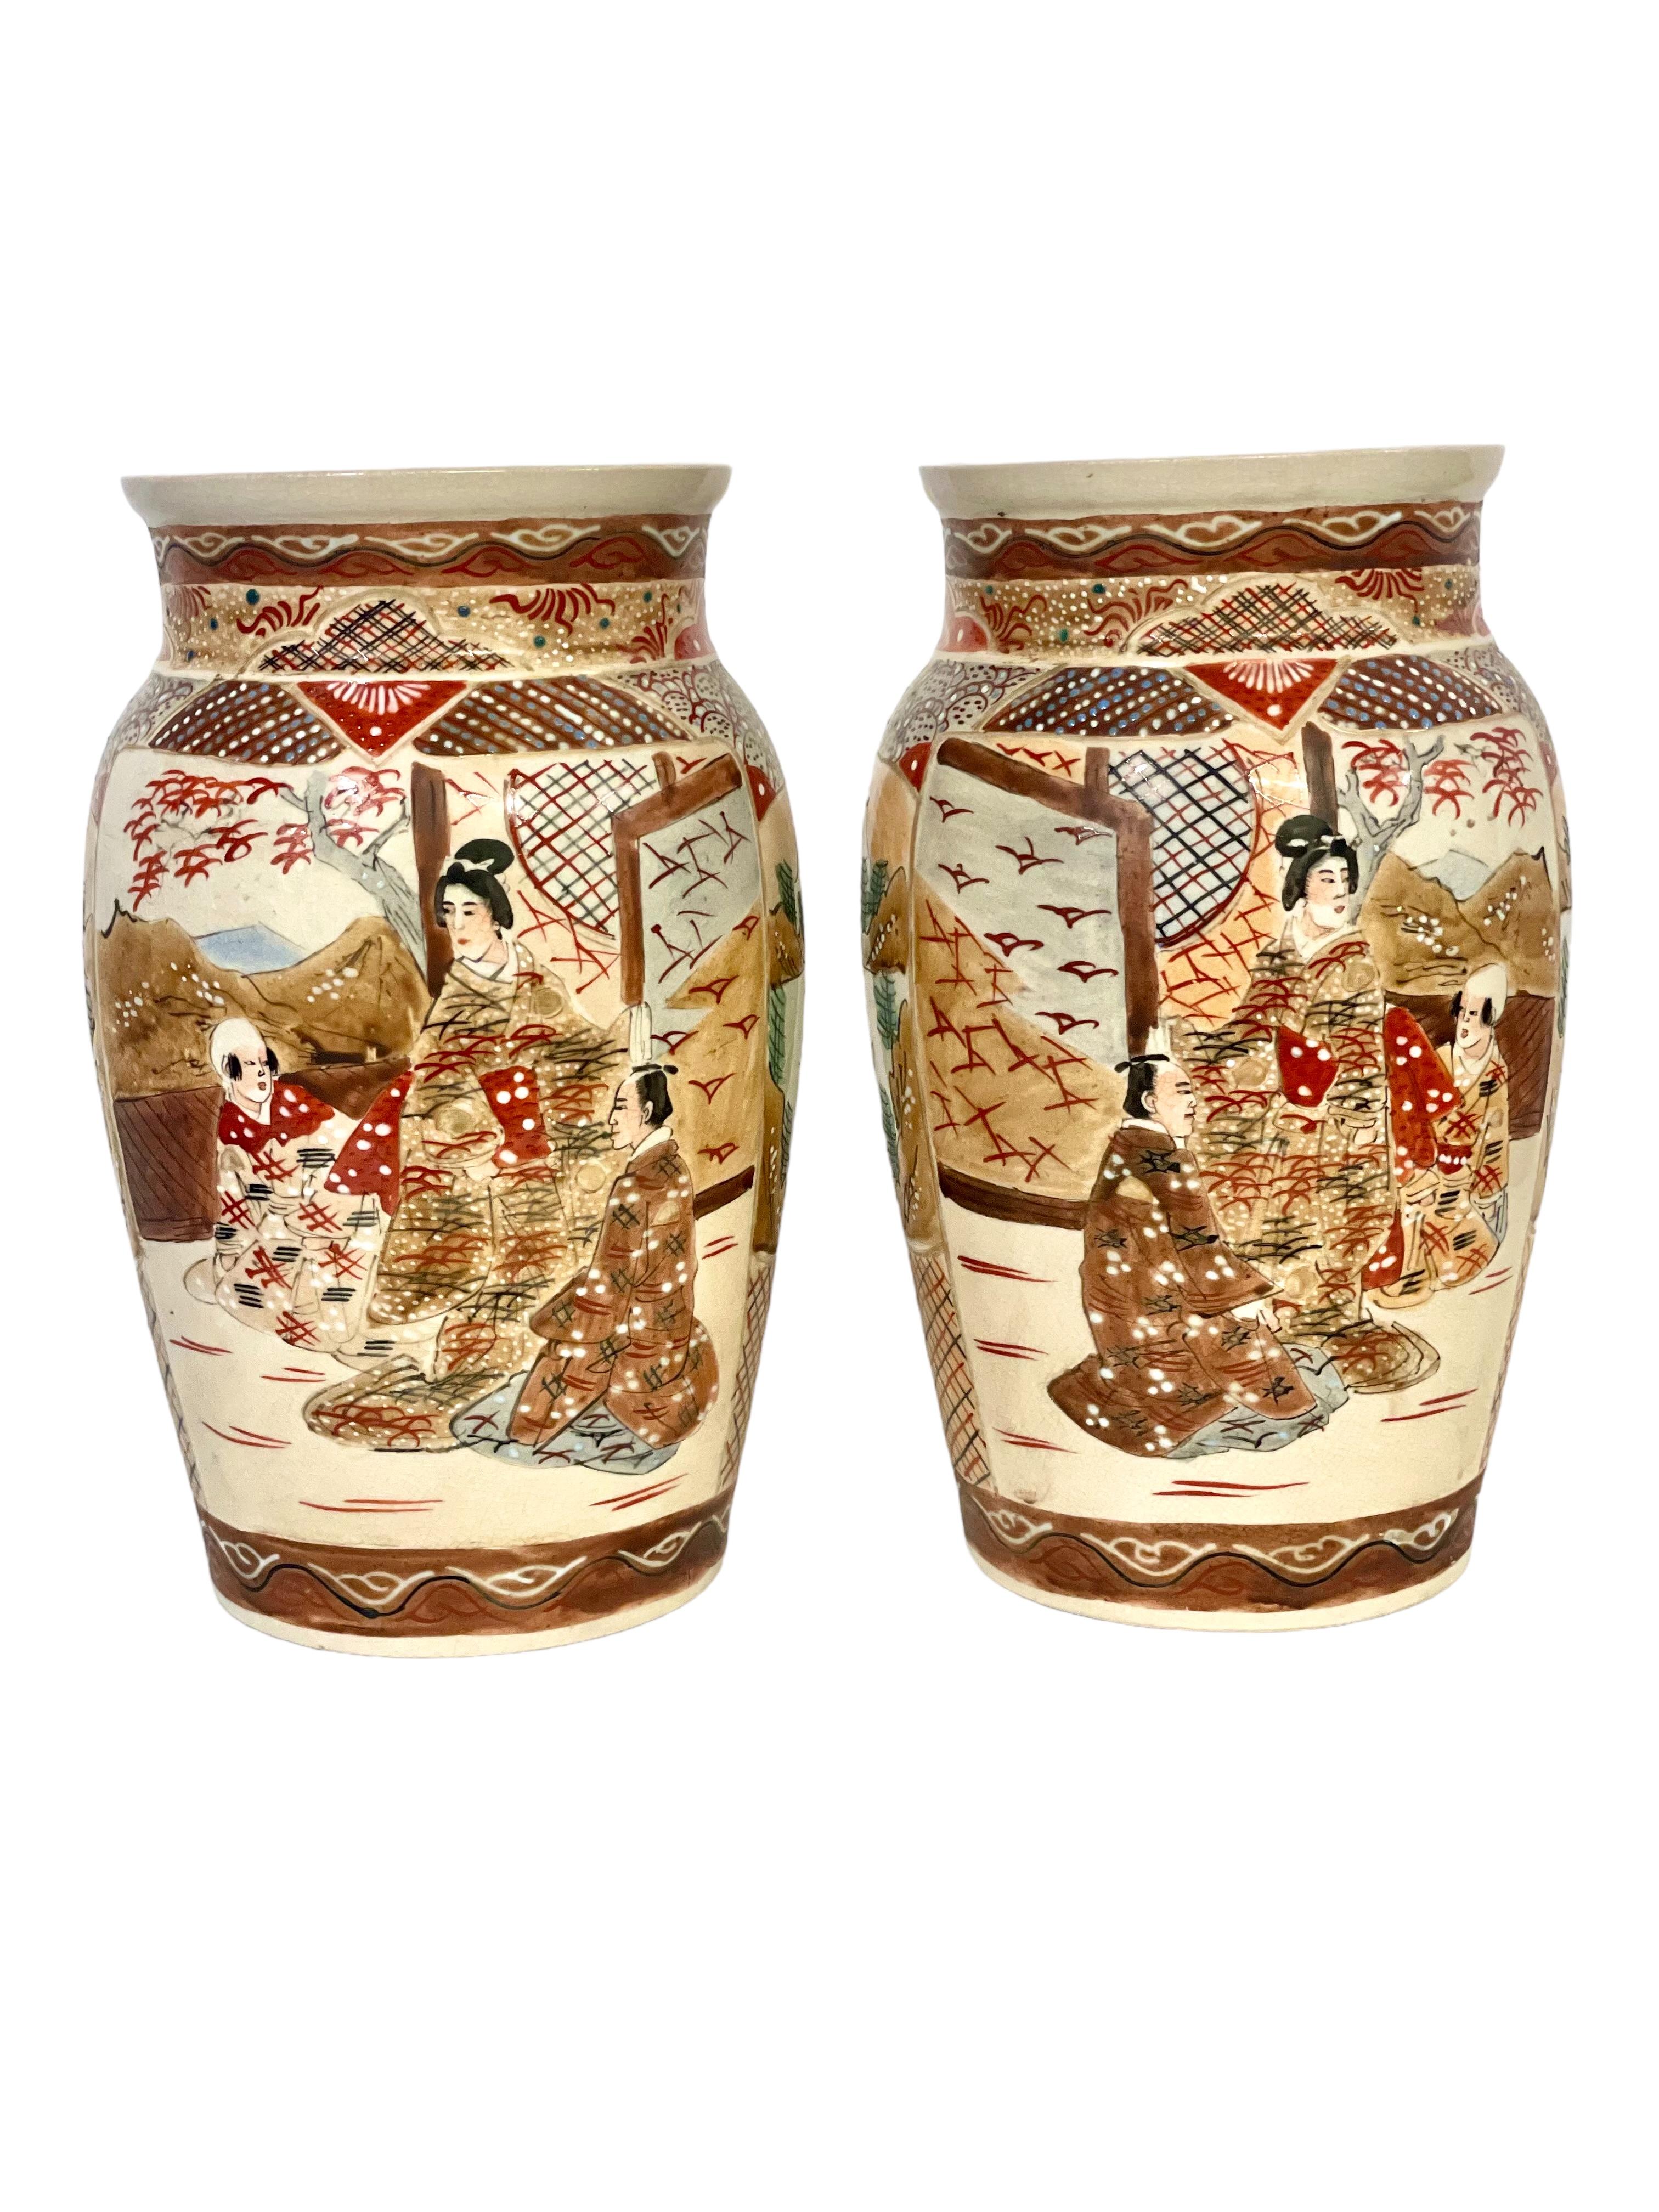 Paire de vases japonais en faïence de Satsuma, décorés dans les couleurs typiques de Satsuma, avec des émaux et de fortes dorures. Les motifs sur les corps de ces vases à épaulement de la fin du XIXe siècle ou du début du XXe siècle présentent des